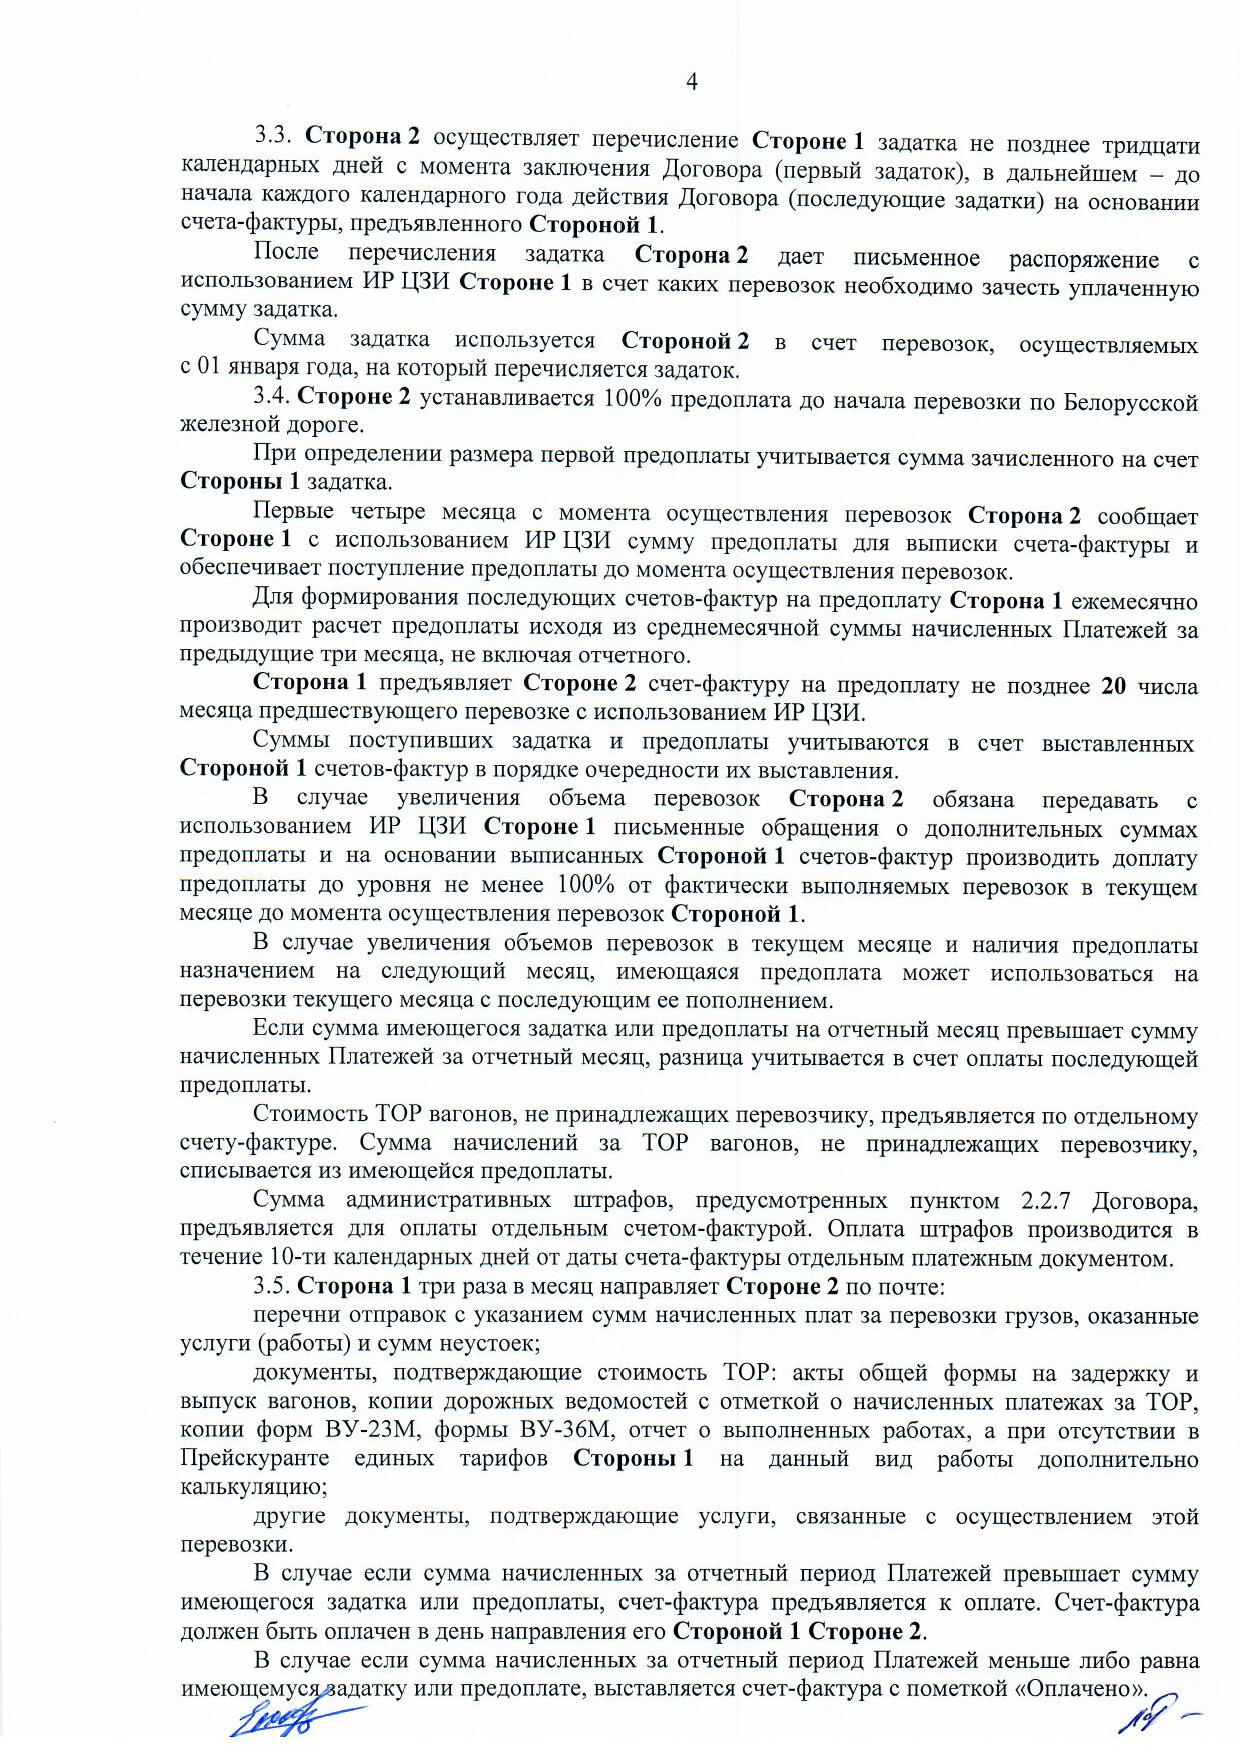 Договор между БЖД и ООО «Логистик Энерджи» от 29.11.2021 № ИРЦ/Ю-710 (Страница 4)